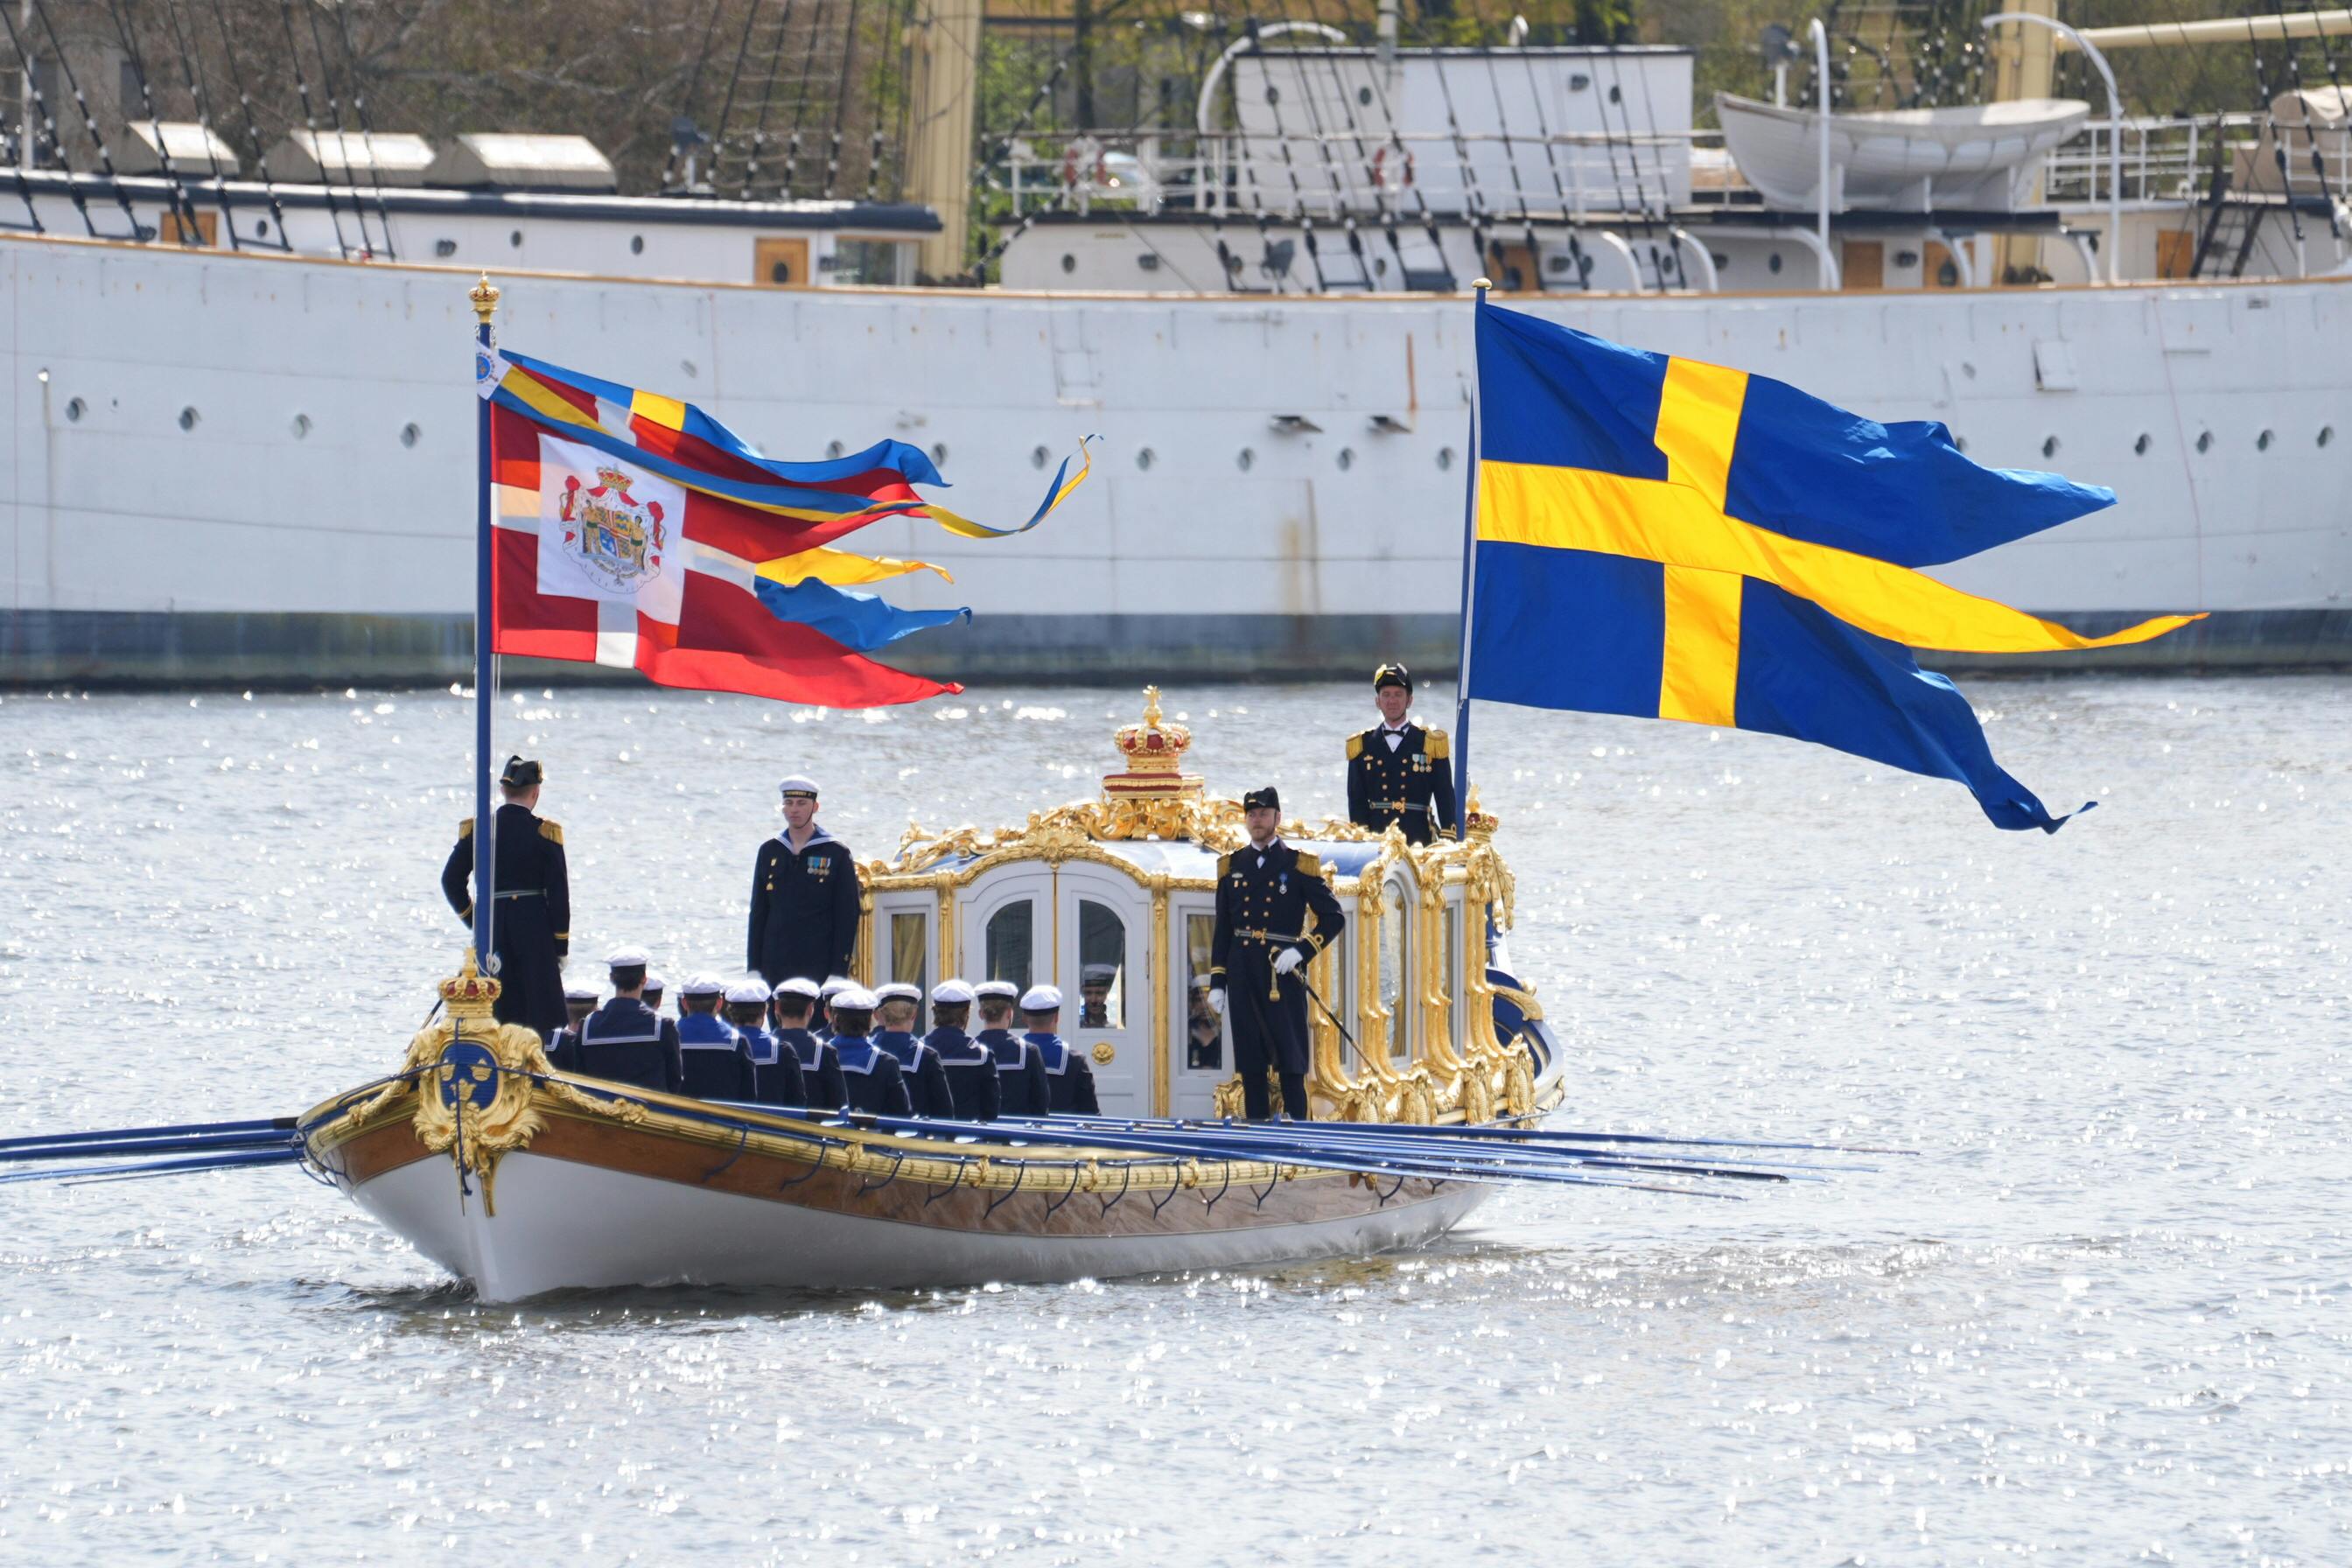 Kong Frederik og dronning Mary er på deres første statsbesøg i Sverige. Se dem ankomme her.